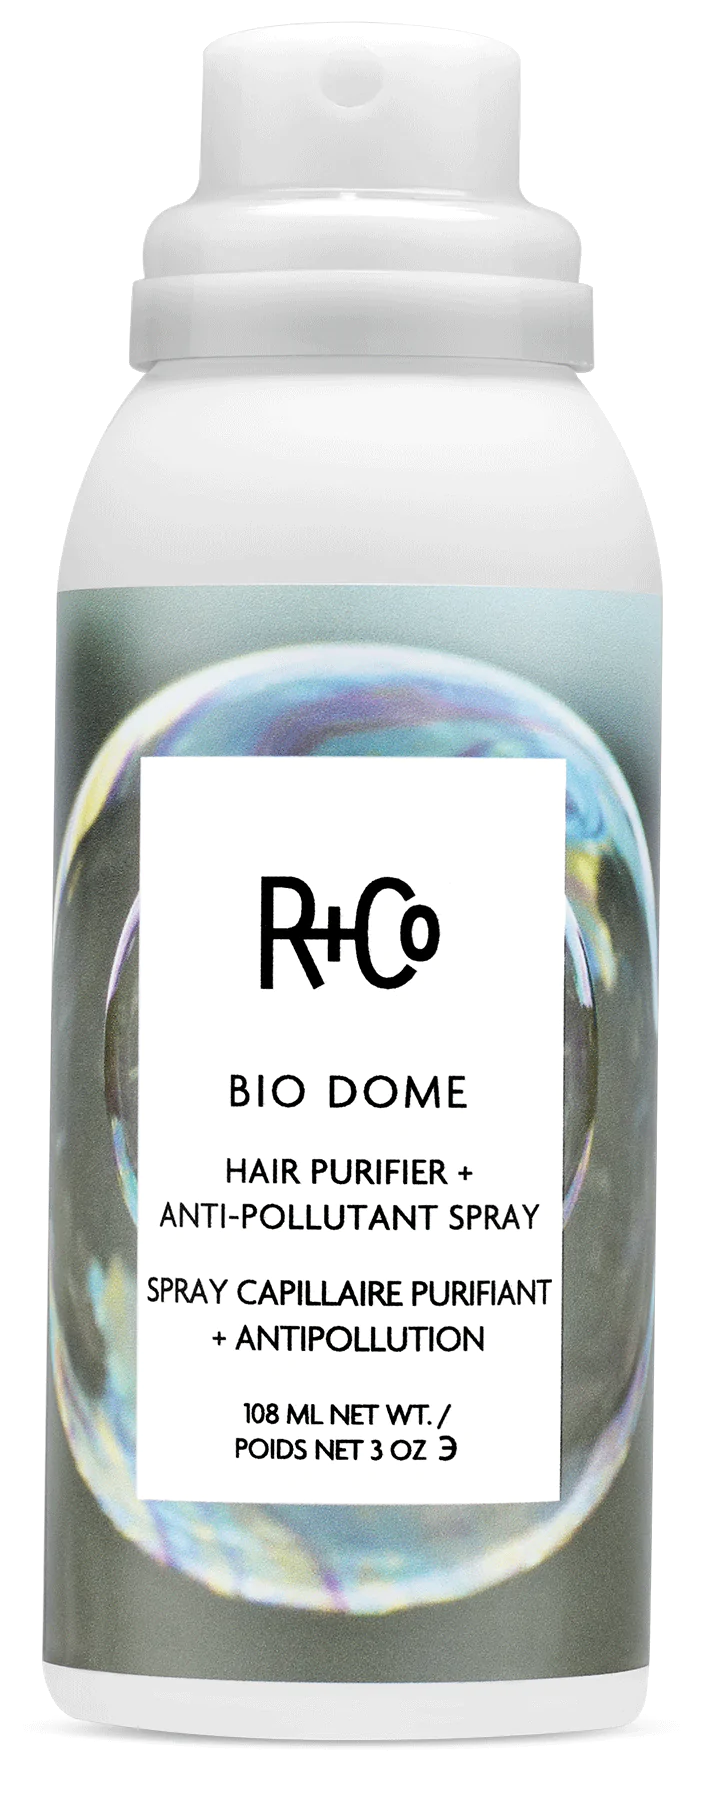 Bio Dome ~ R+Co